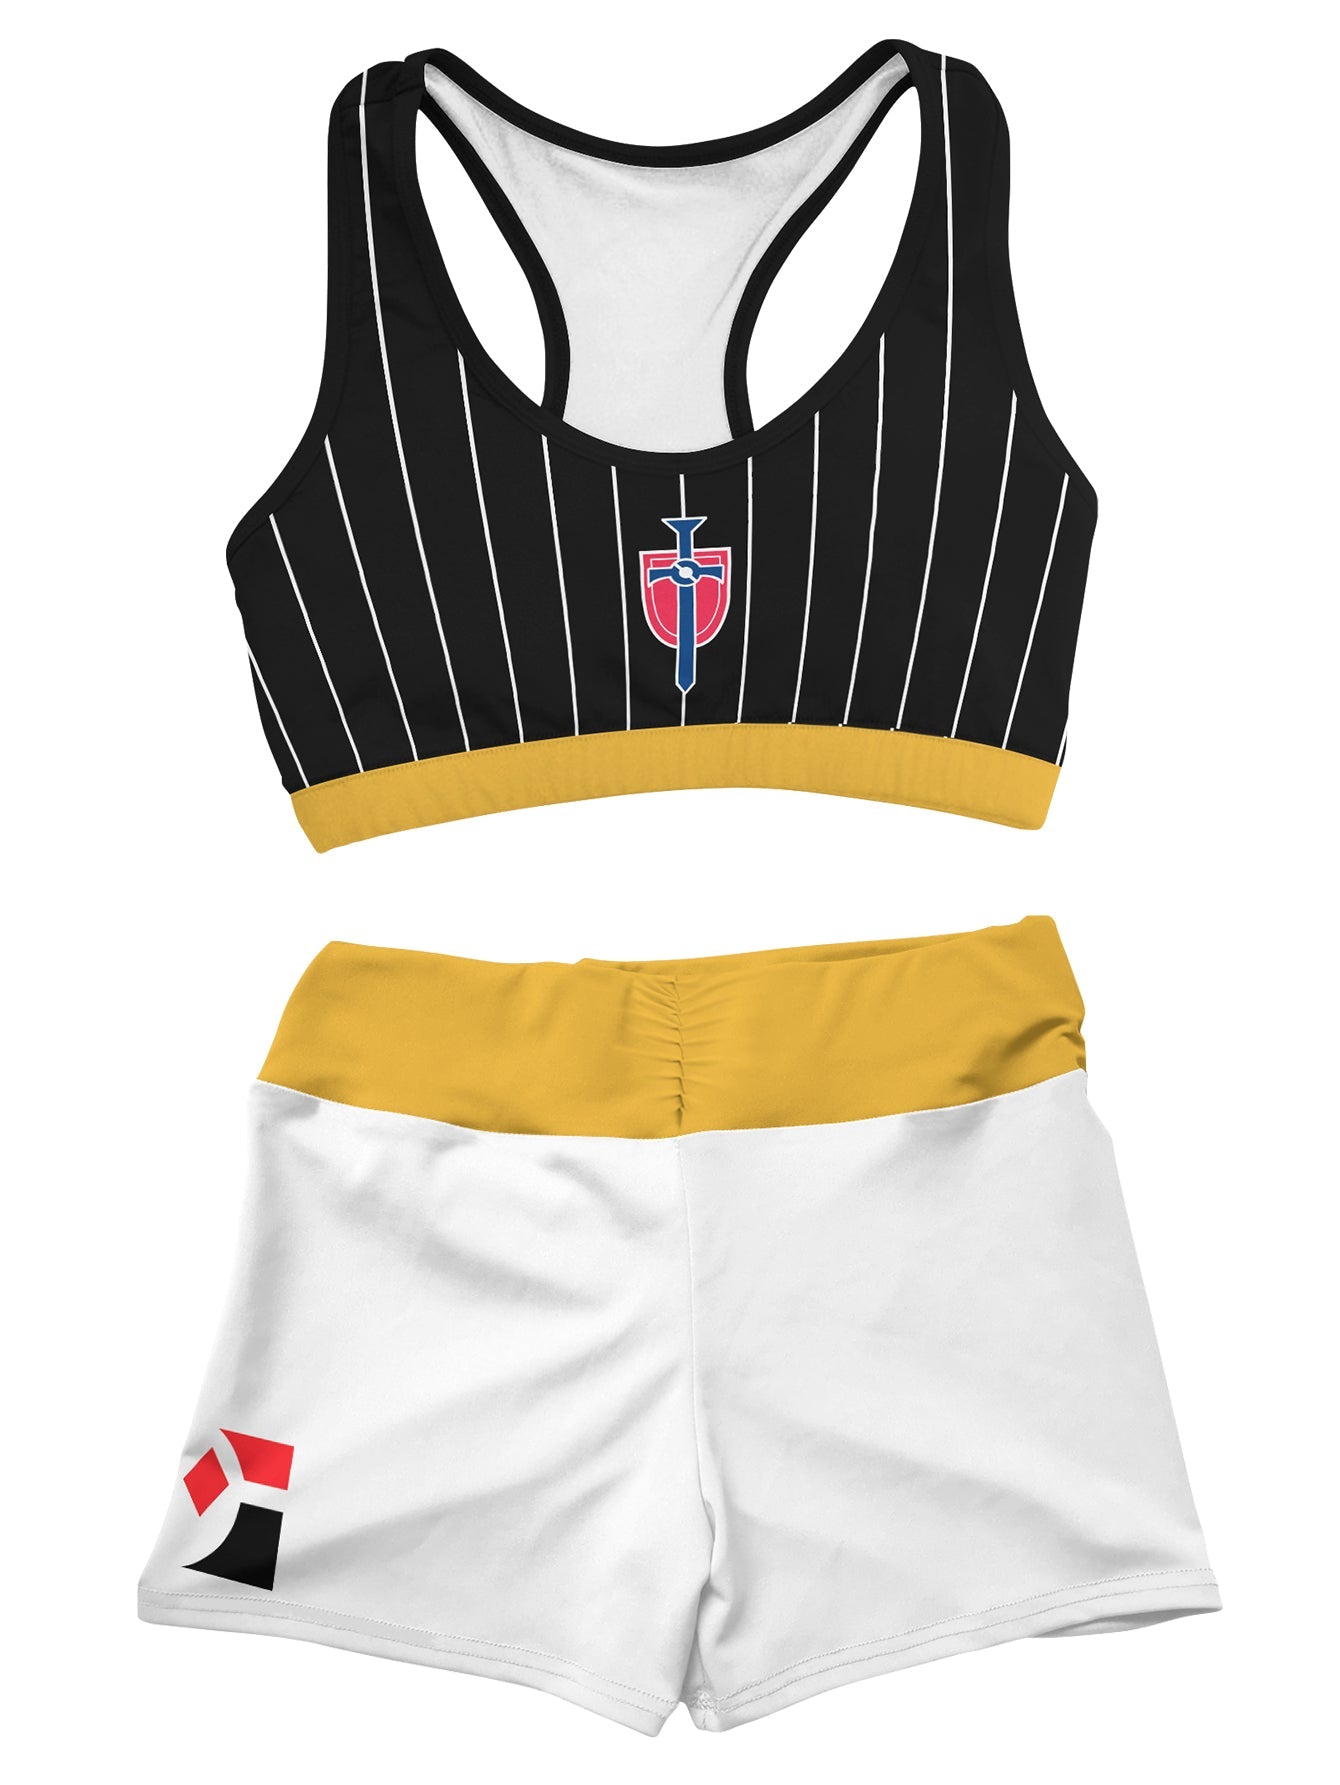 Fandomaniax - [Buy 1 Get 1 SALE] Pokemon Champion Uniform Active Wear Set